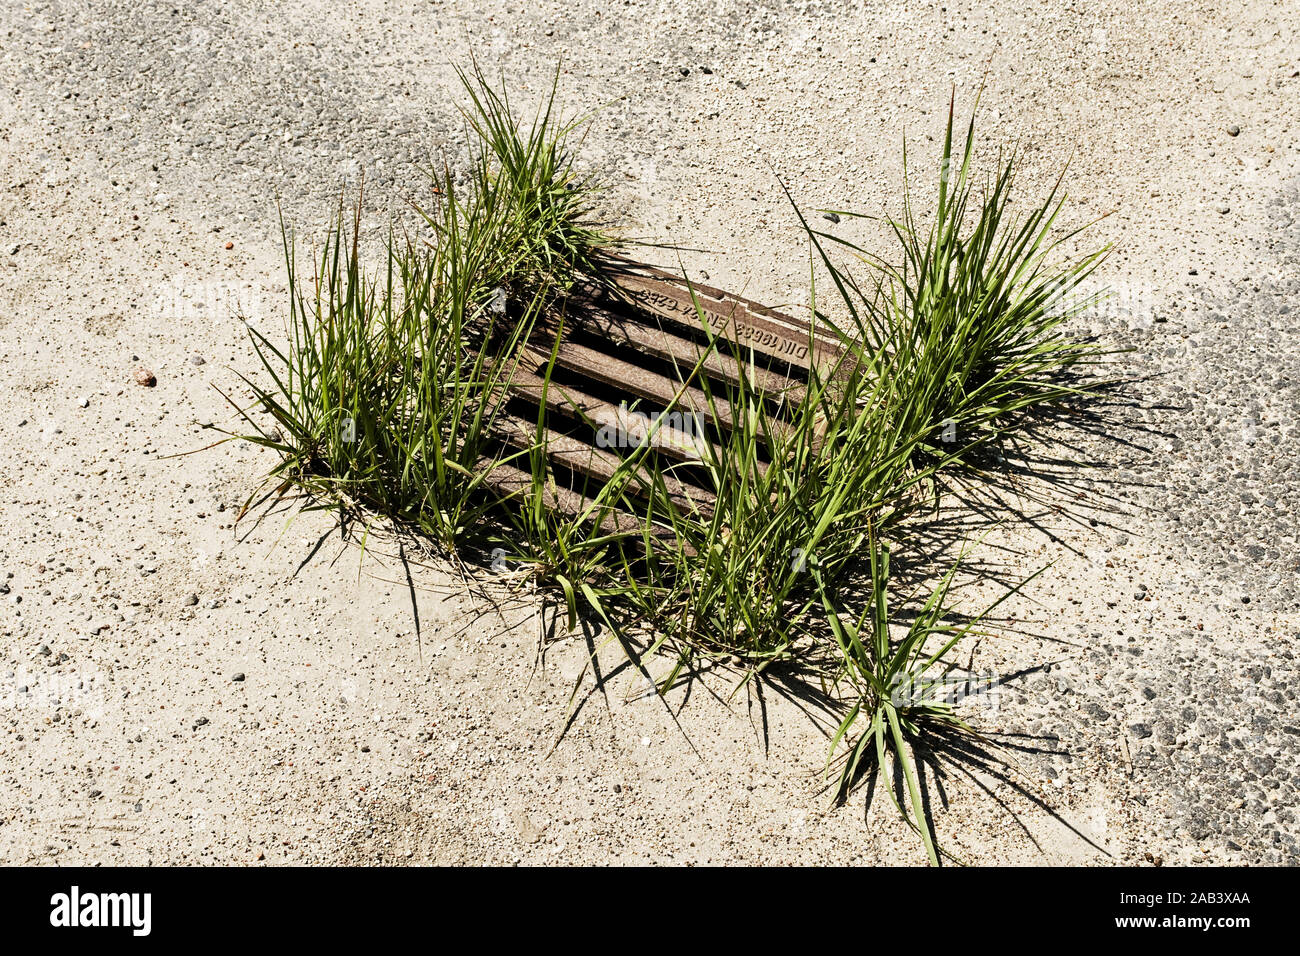 Gullideckel umwachsen von Gras |Manhole cover round of grass cover| Stock Photo